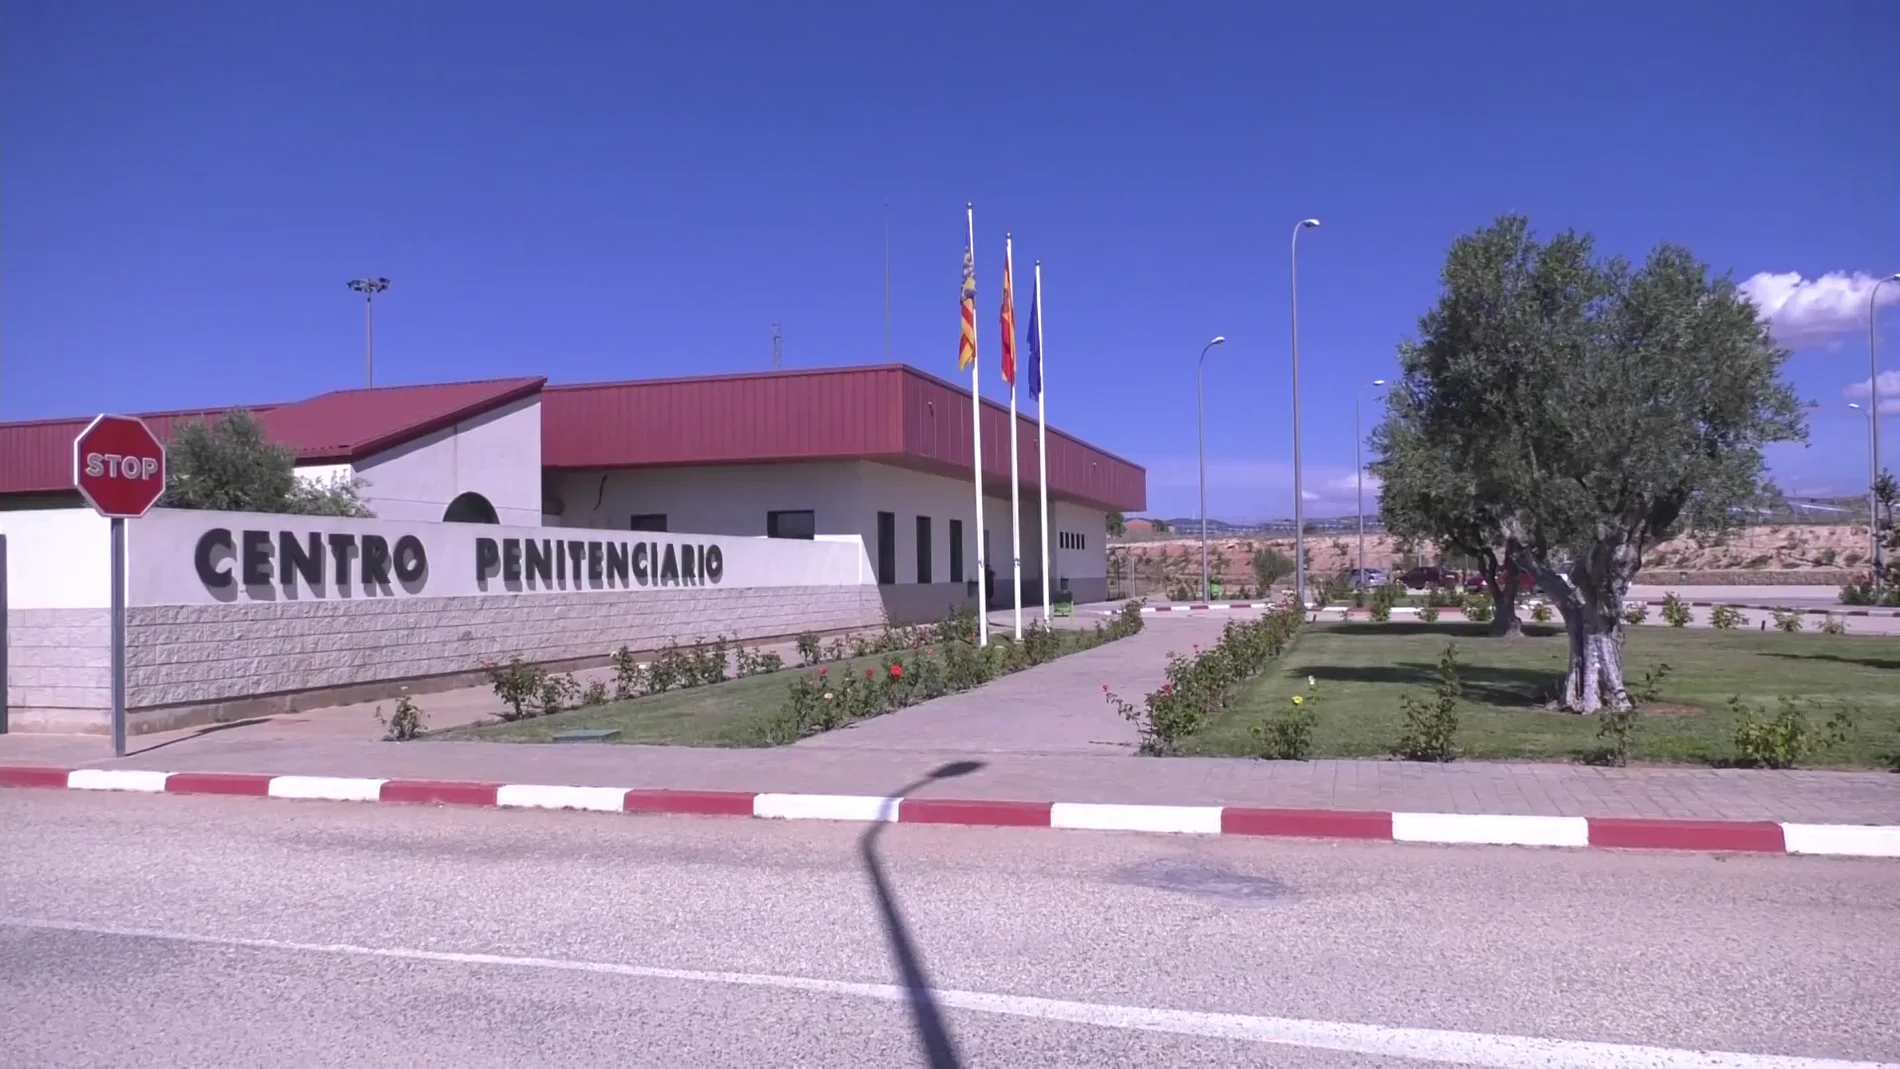 Centro penitenciario de Villena